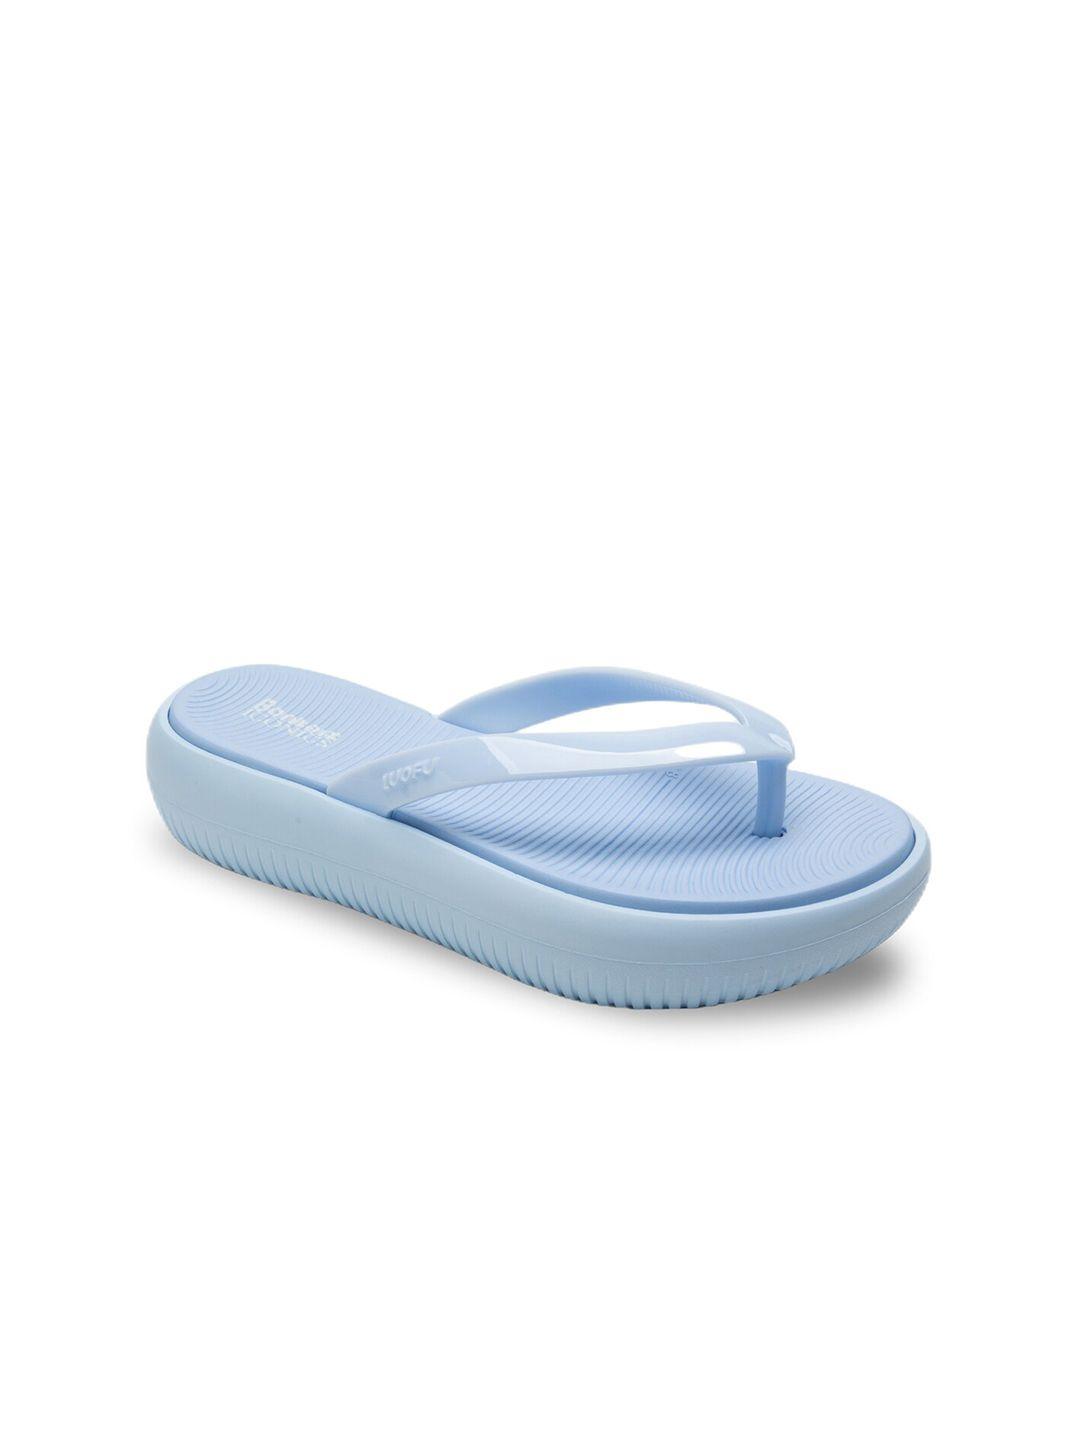 bonkerz-women-blue-croslite-thong-flip-flops